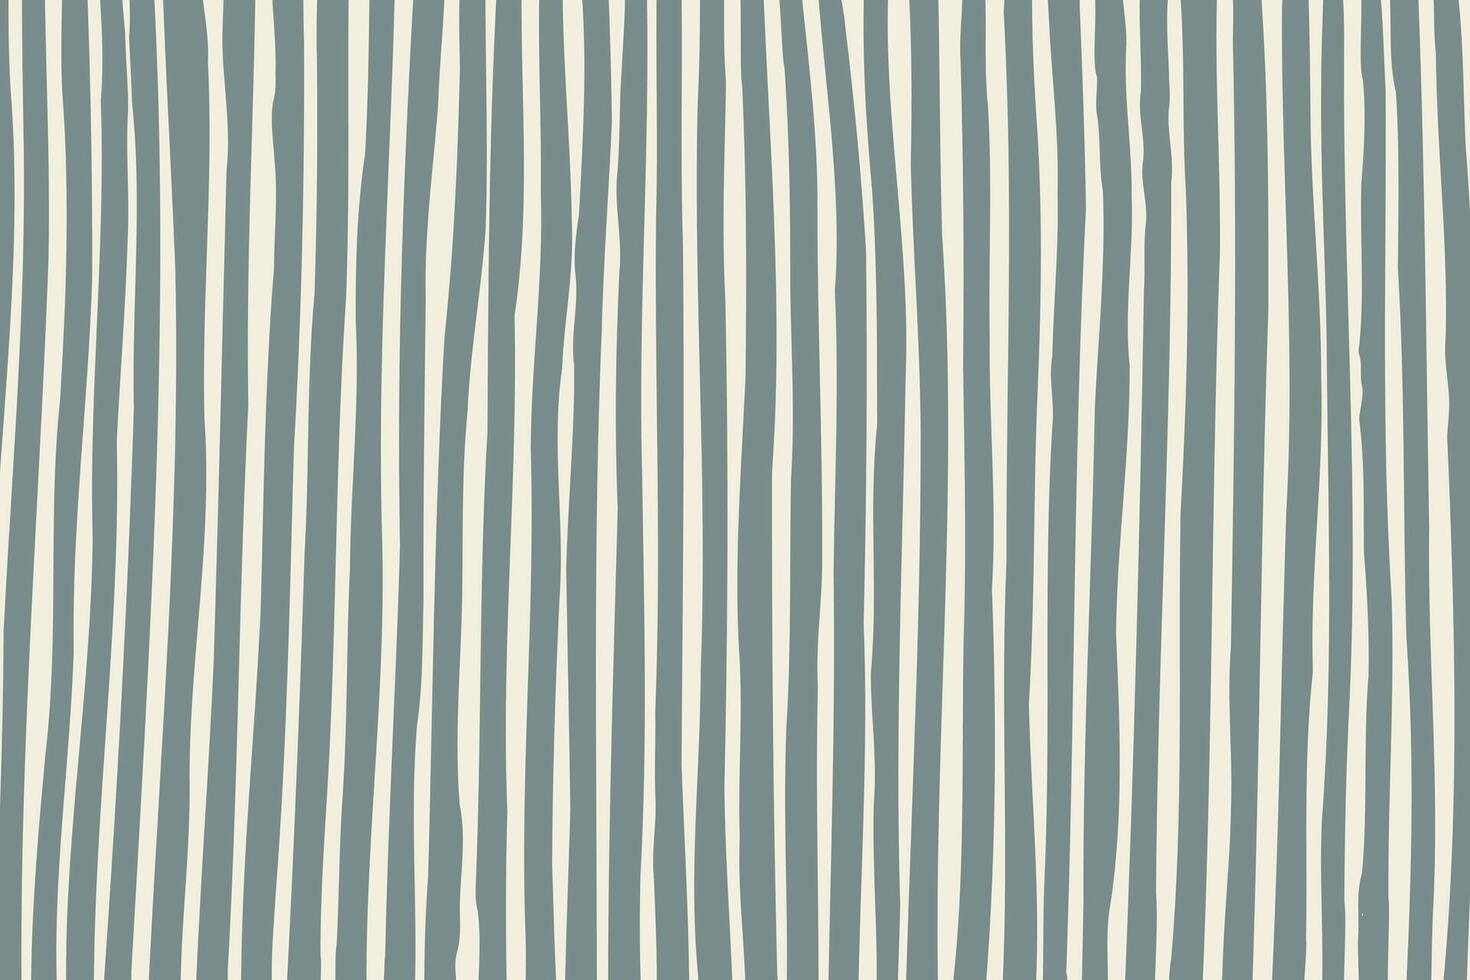 horisontell bakgrund av parallell vertikal ritad för hand Ränder i grå vektor